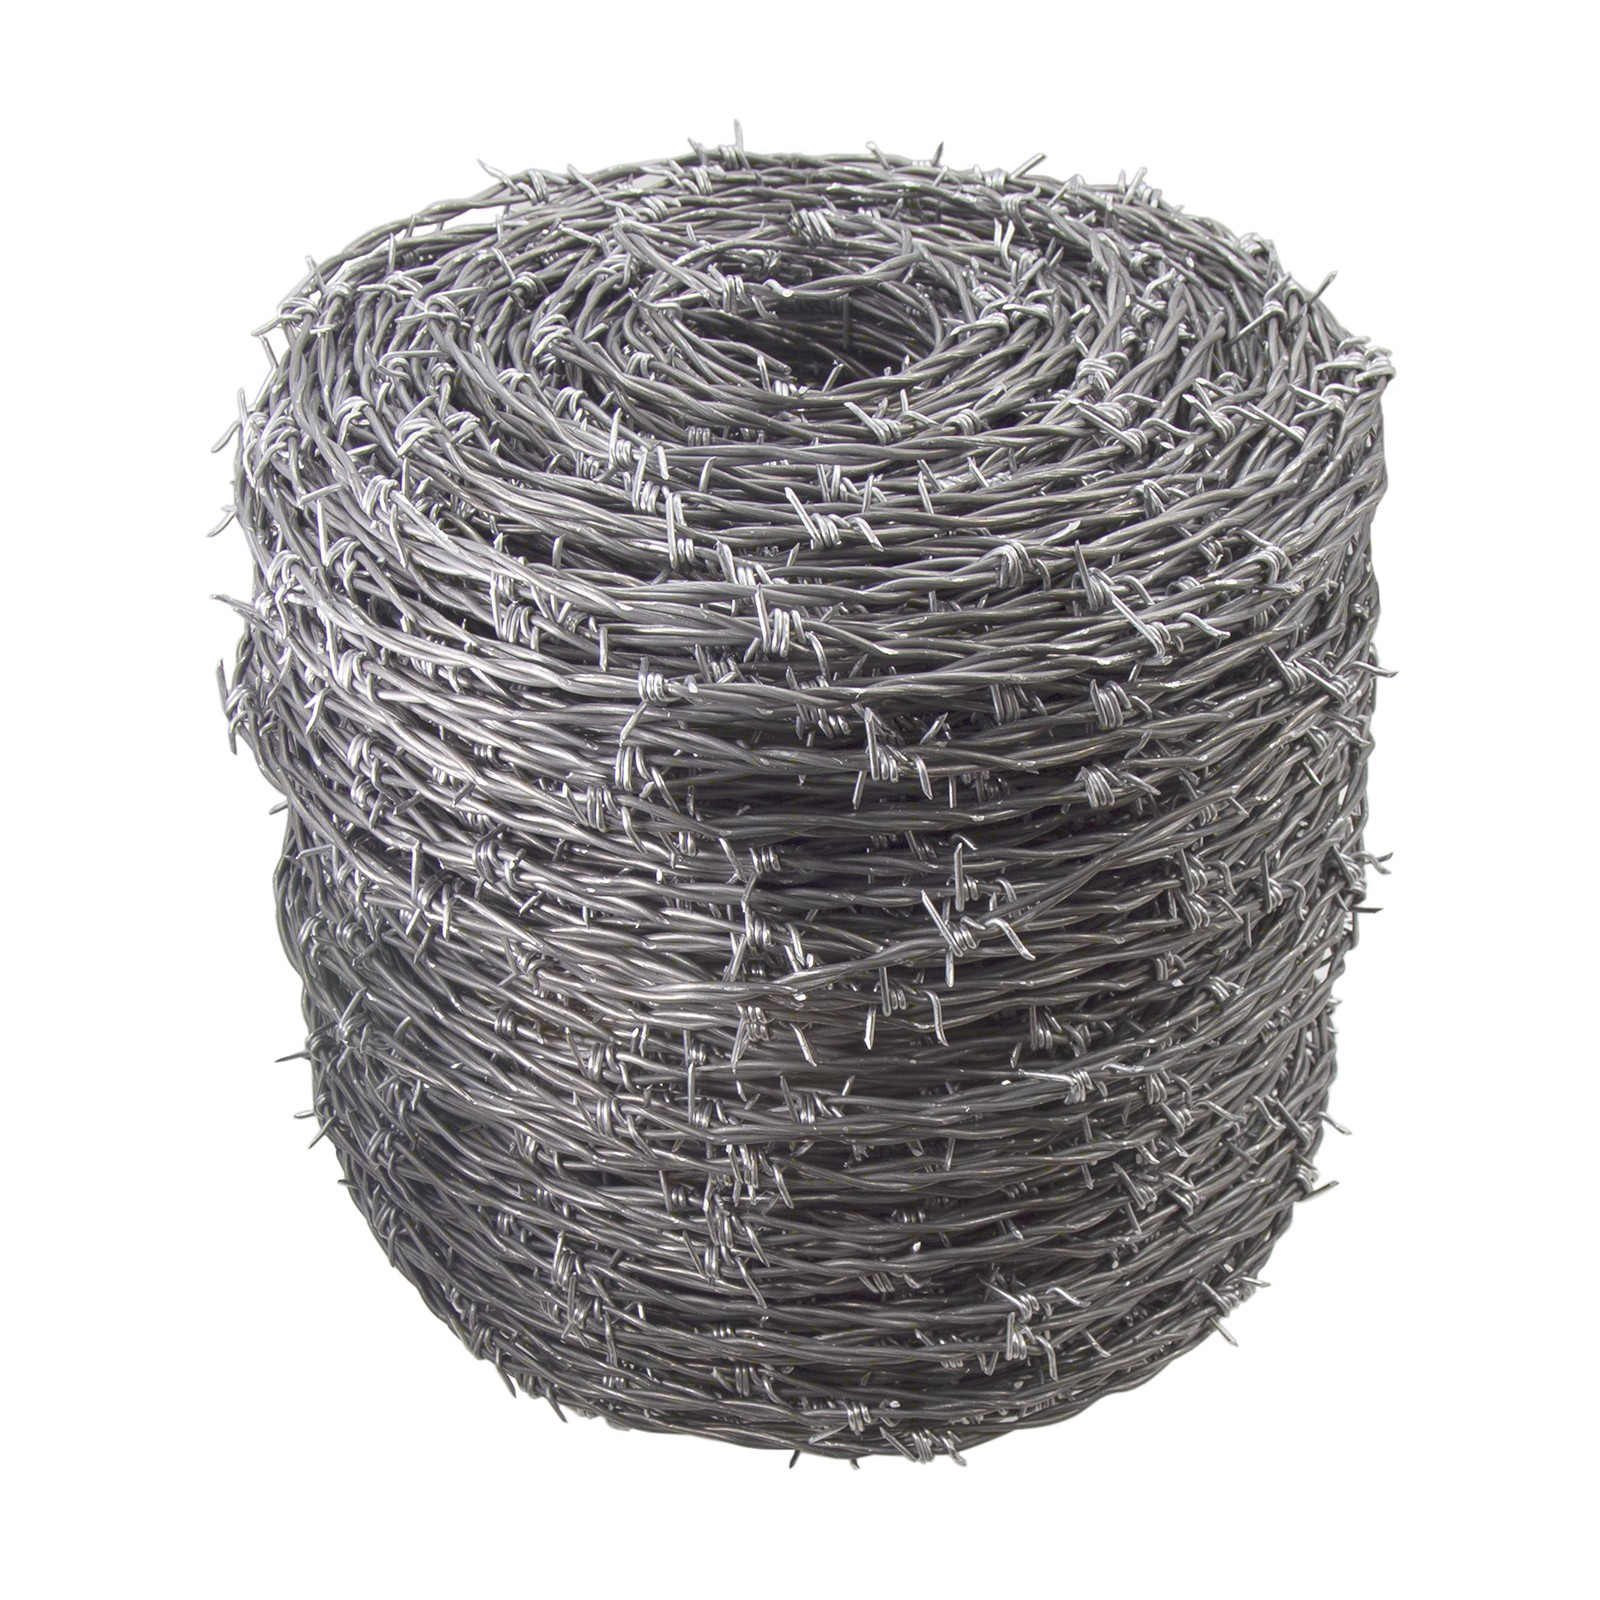 Barato nga Presyo nga Wholesale Galvanized Barbed Wire Uban sa Customized Specifications